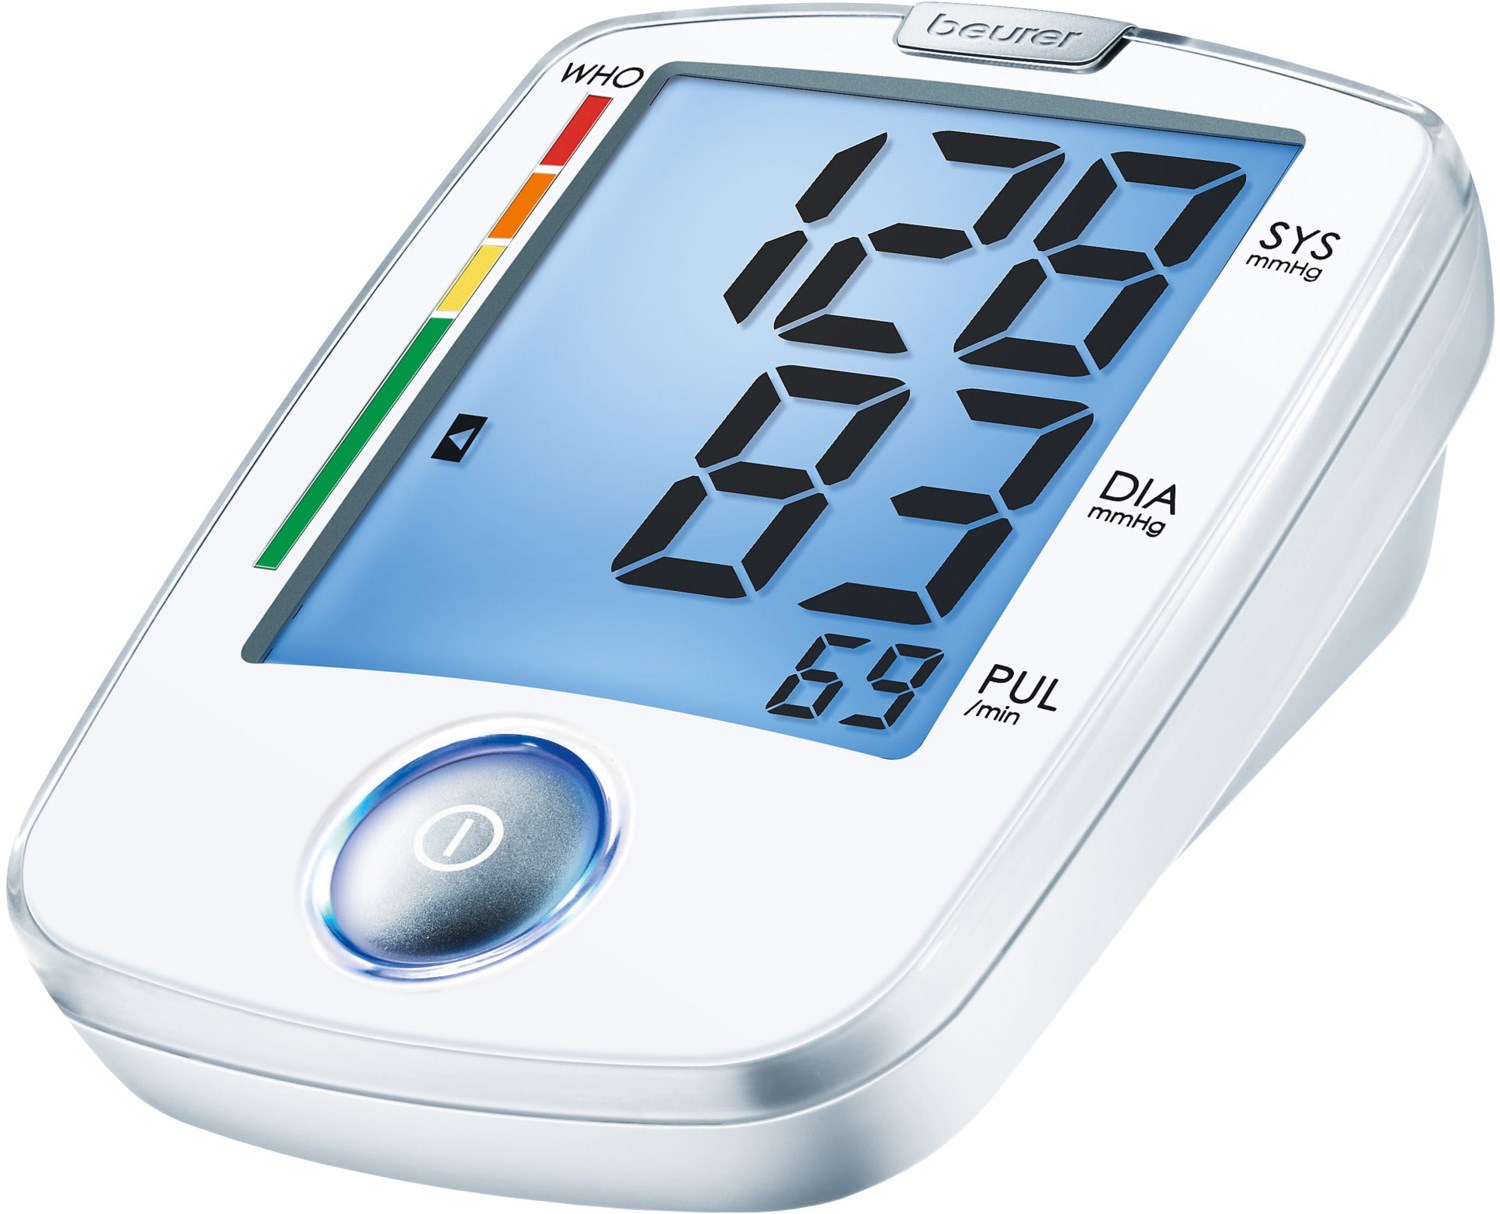 BM 44 Blutdruckmessgerät weiß von Beurer